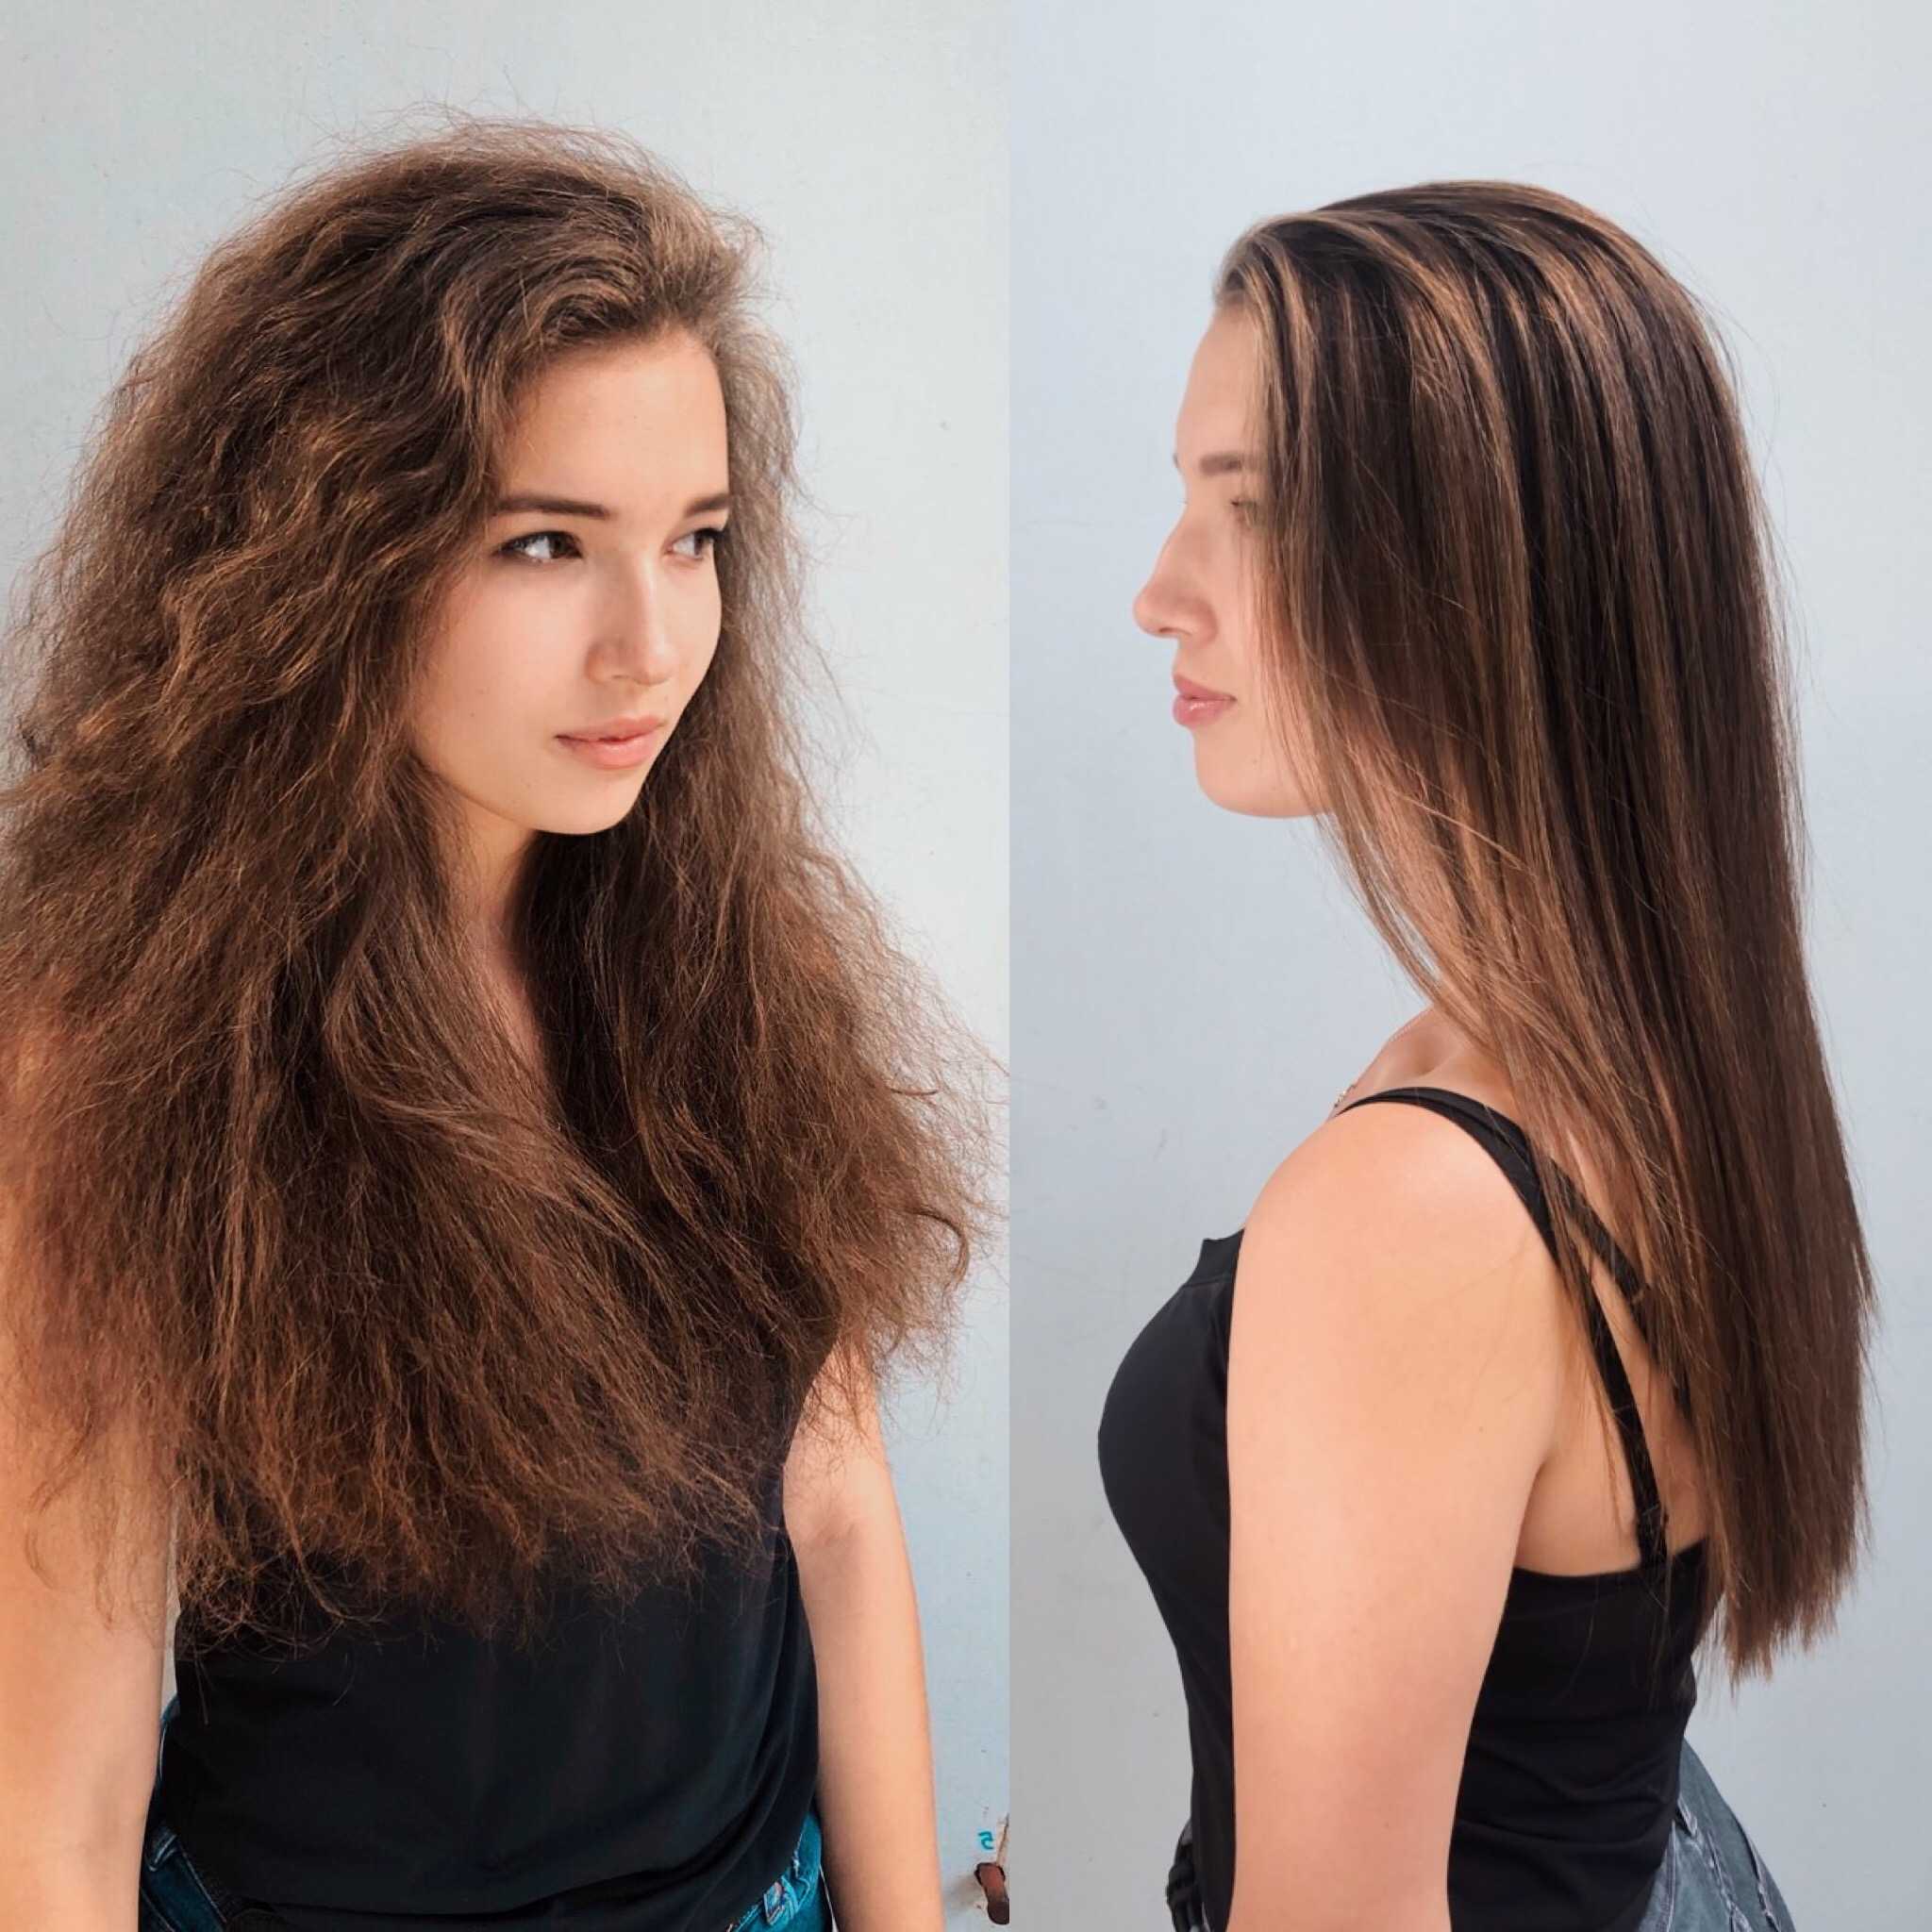 Длинные волосы выпадают больше чем короткие? миф или реальность?